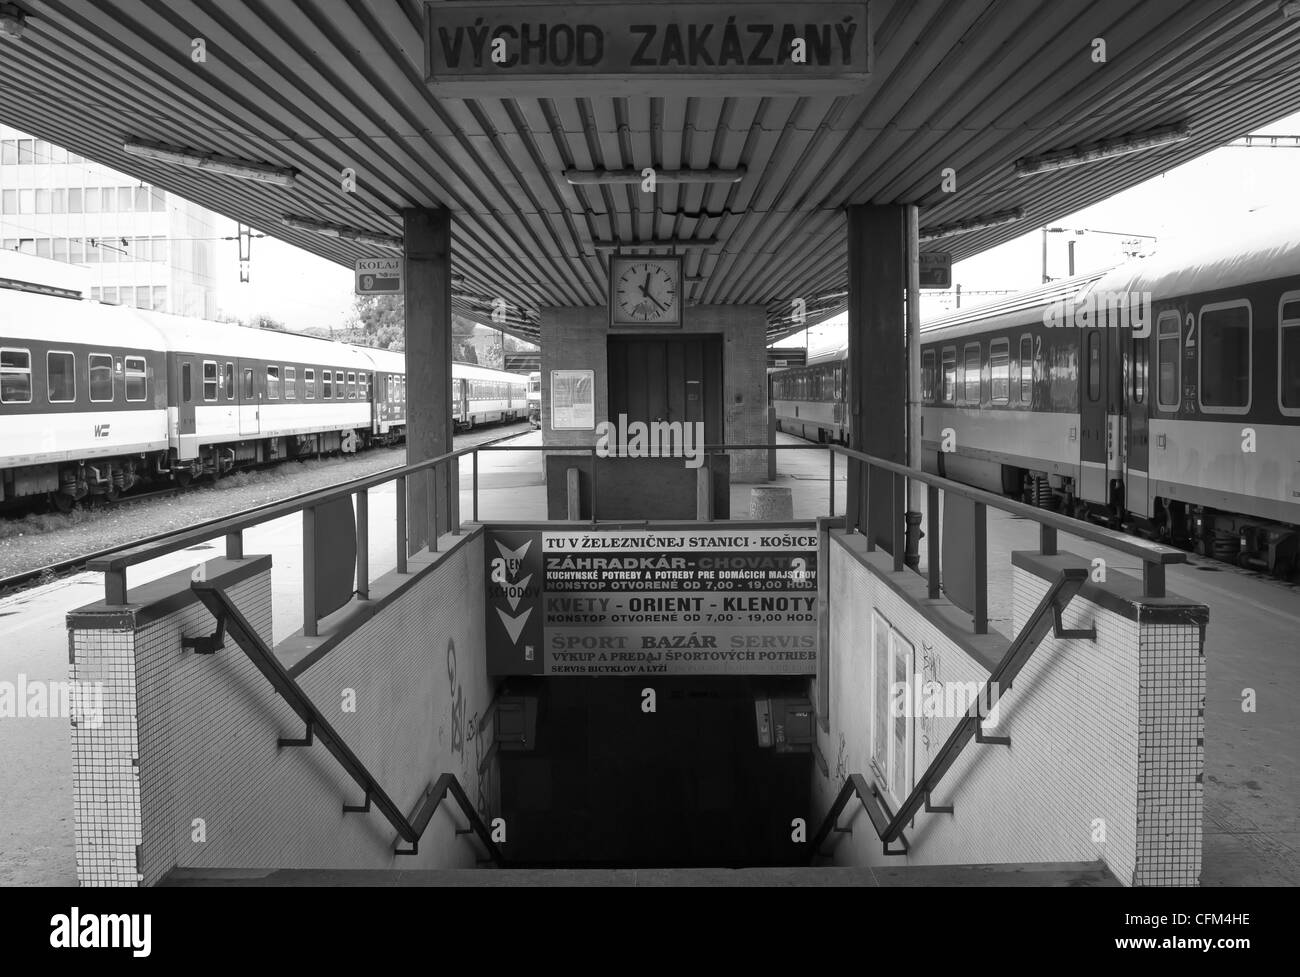 Stazione ferroviaria Kosice Slovacchia scale di piattaforma di trasporto di viaggio ferroviario di viaggio Foto Stock